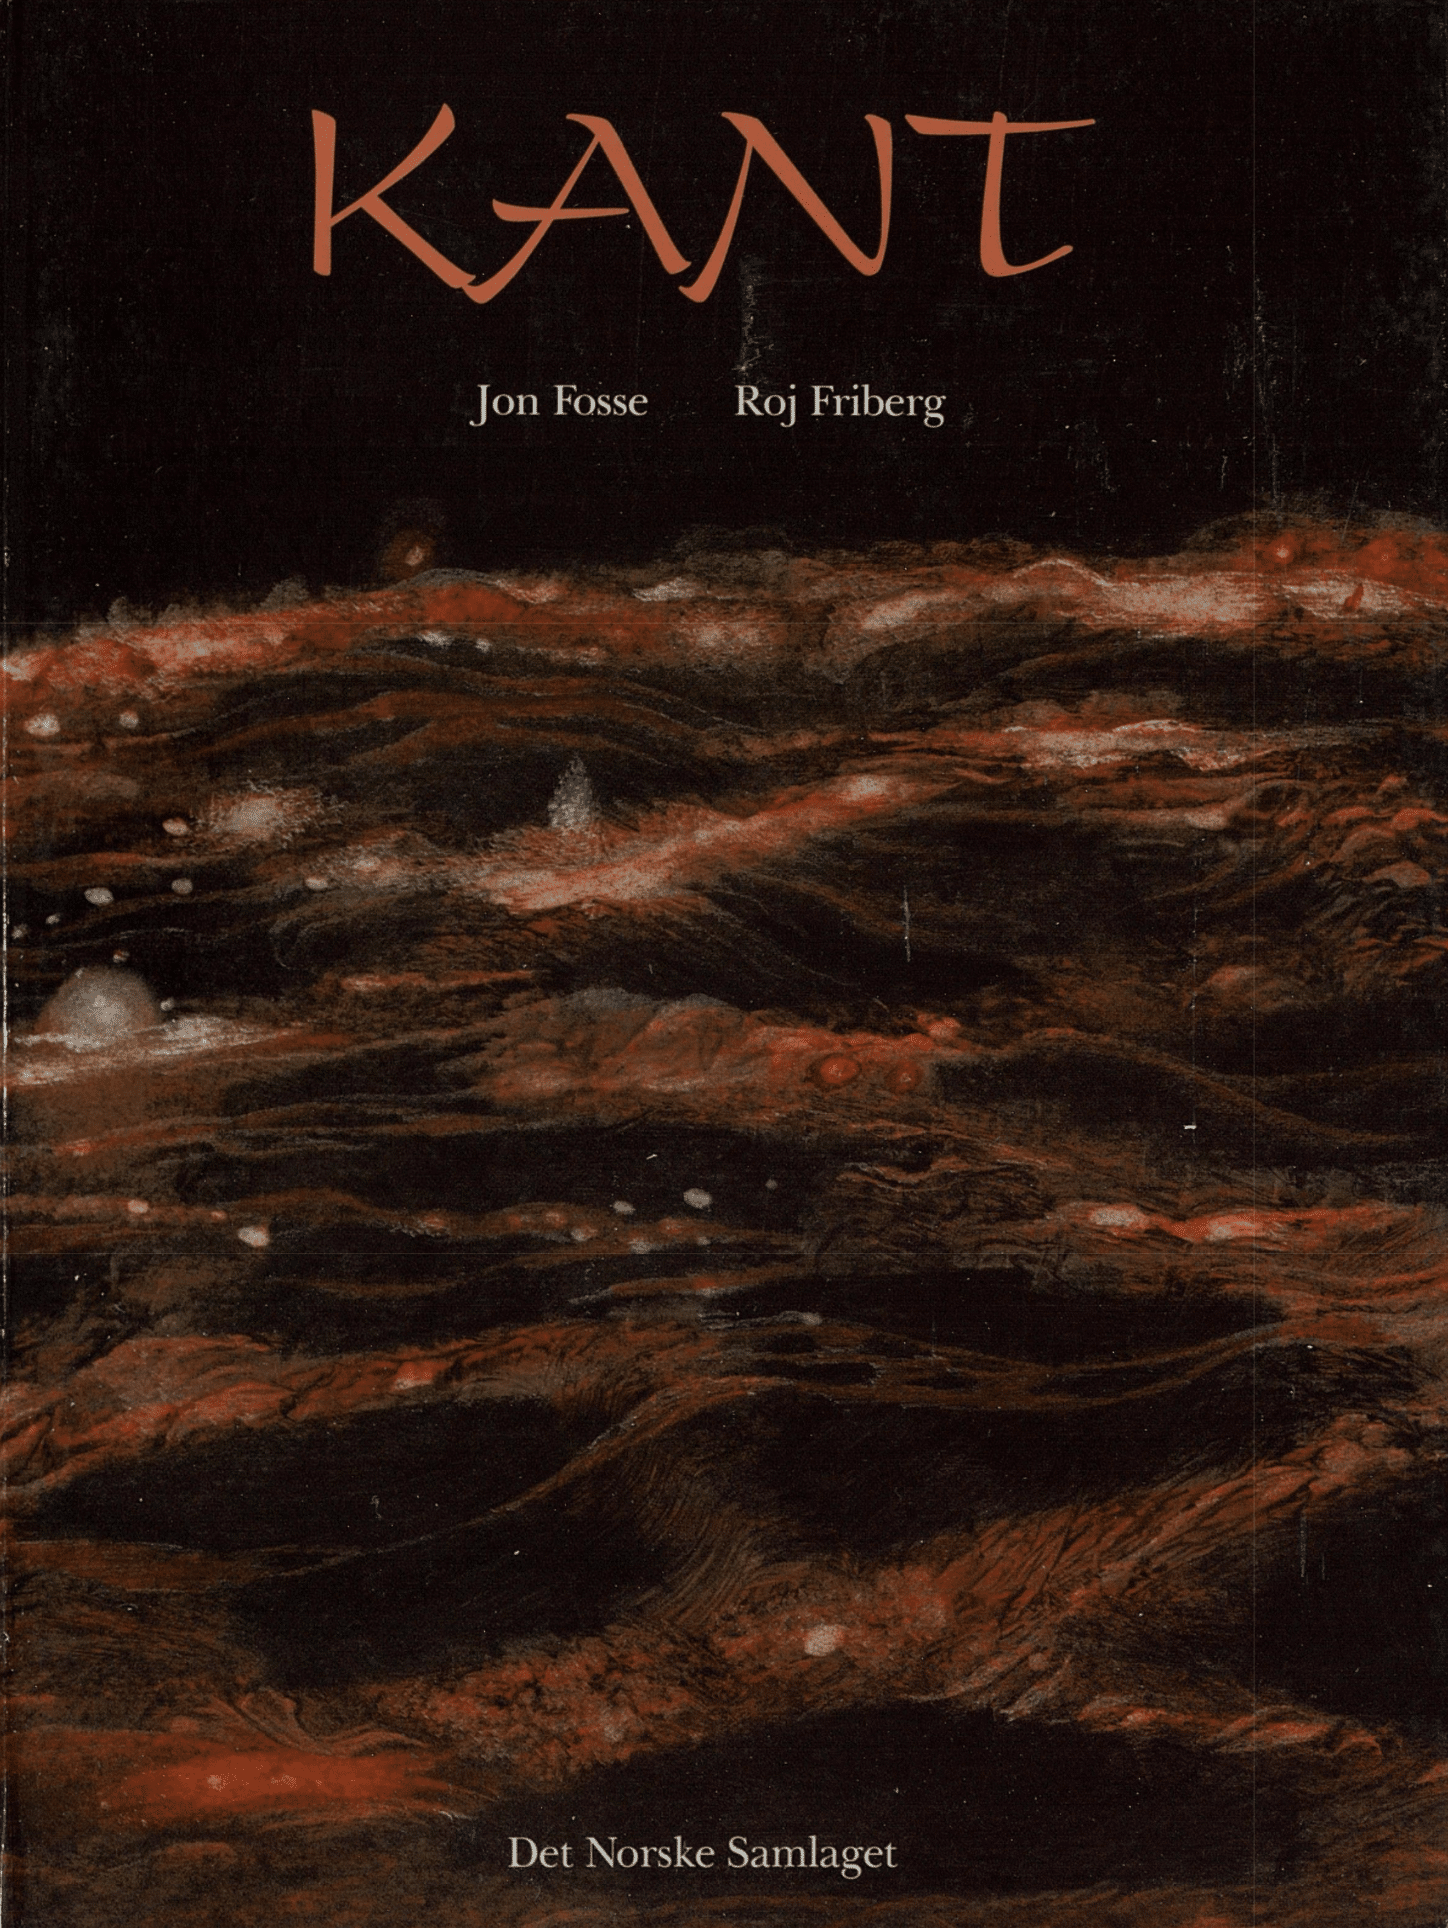 Omslaget til Kant av Jon Fosse og Ros Friberg. Oransje og brun bølgende bakgrunn som minner om høstlandskap på fjellet.